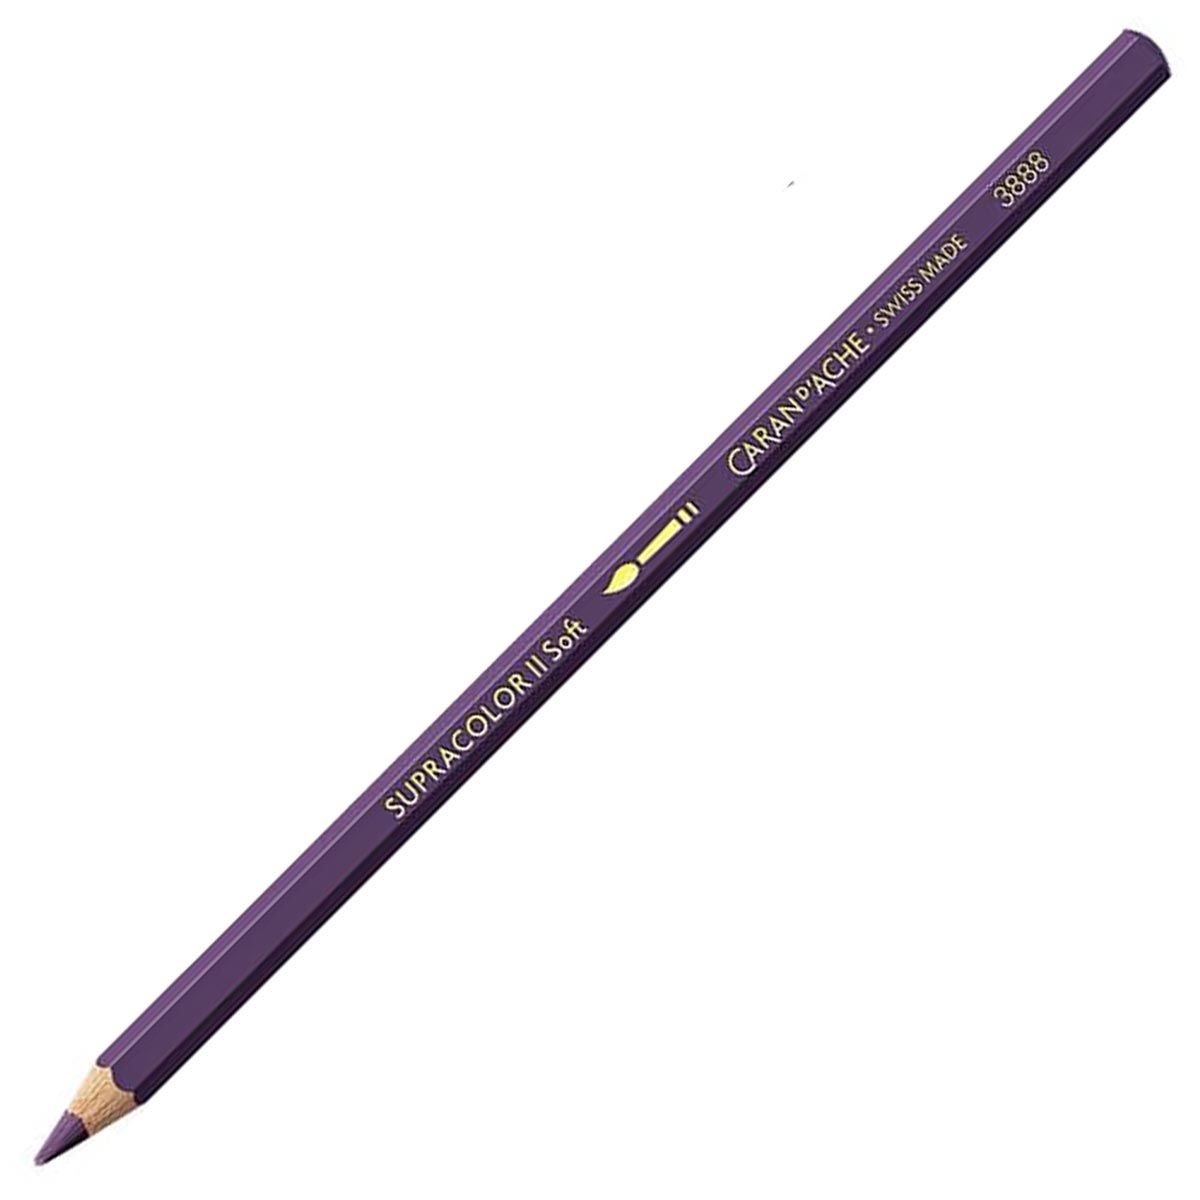 Caran d'Ache Supracolor ll Soft Aquarelle Pencil - Aubergine 099